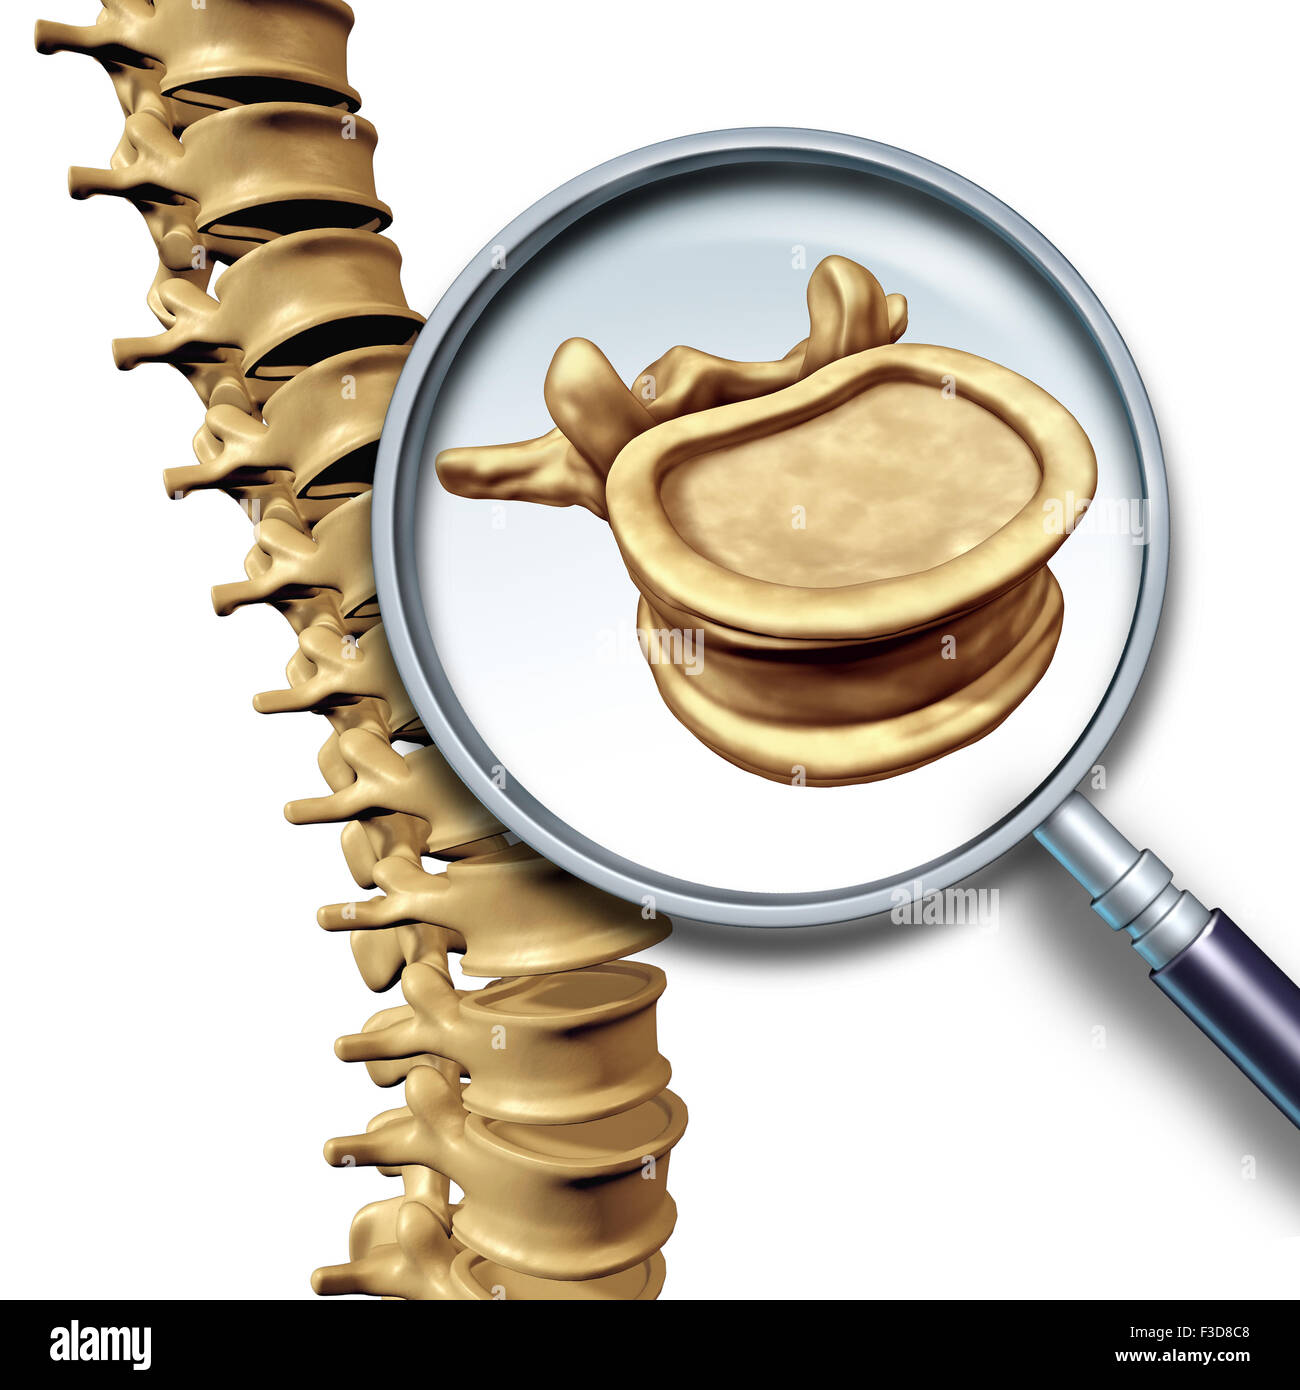 La vertebra colonna vertebrale colonna vertebrale umana concetto come cure mediche simbolo anatomia con scheletro osseo spinale struttura closeup su uno sfondo blu scuro come la copia in bianco lo spazio. Foto Stock